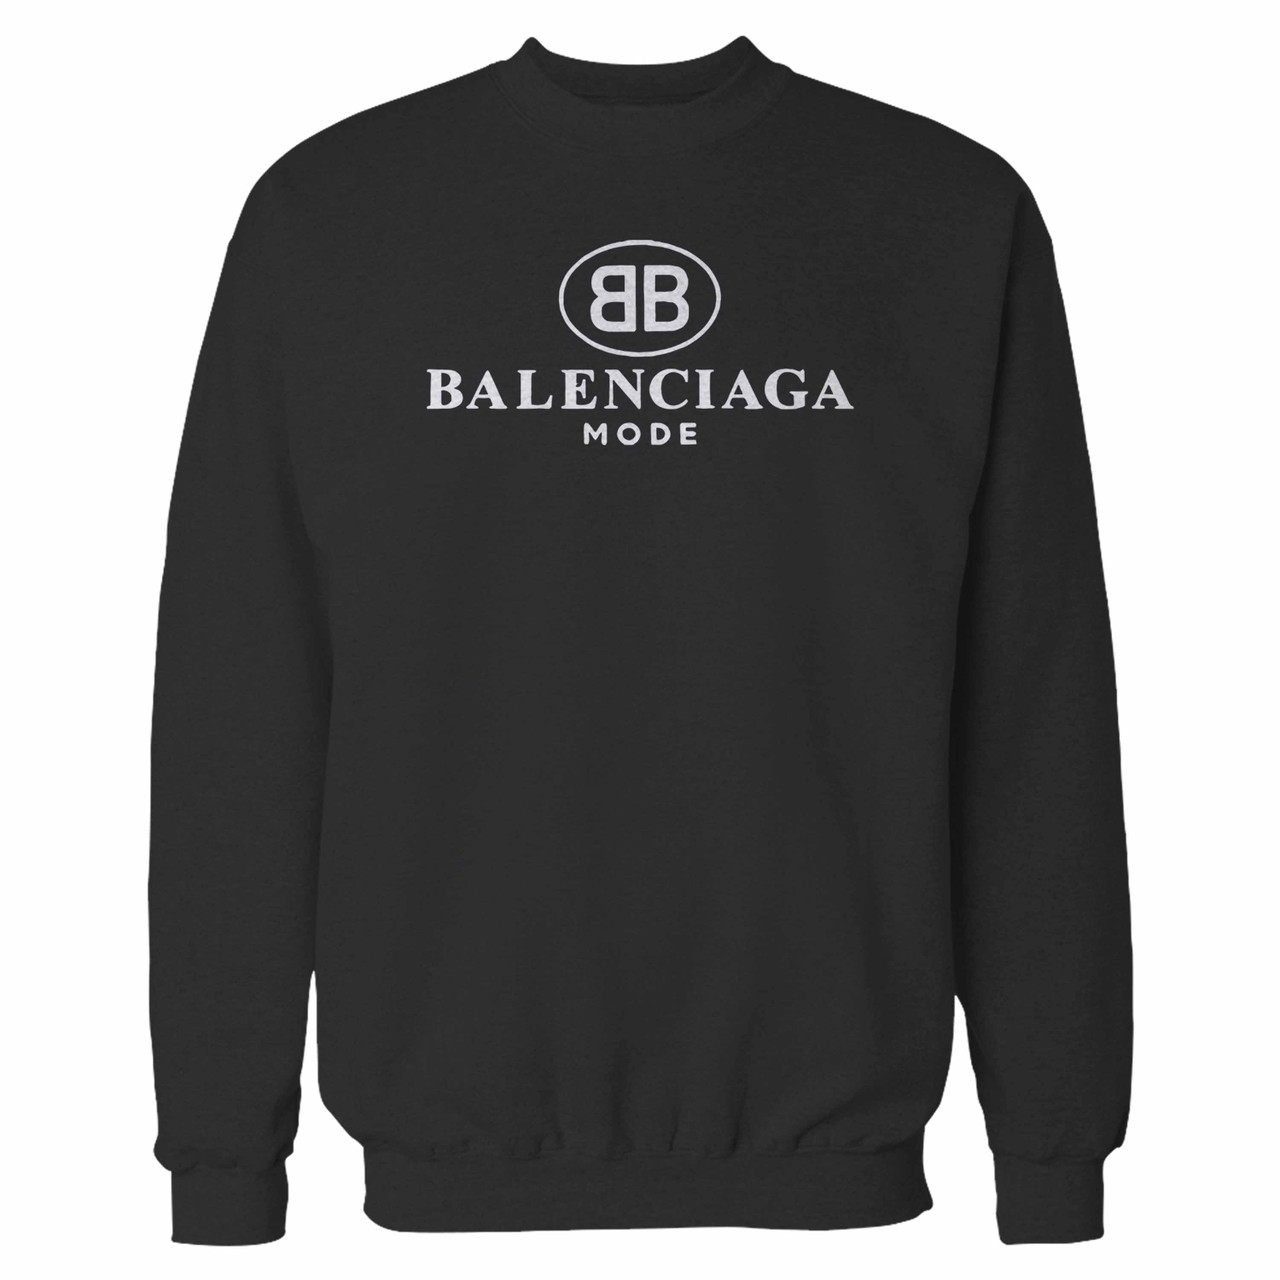 Balenciaga Bb Mode Inspired Crewneck 